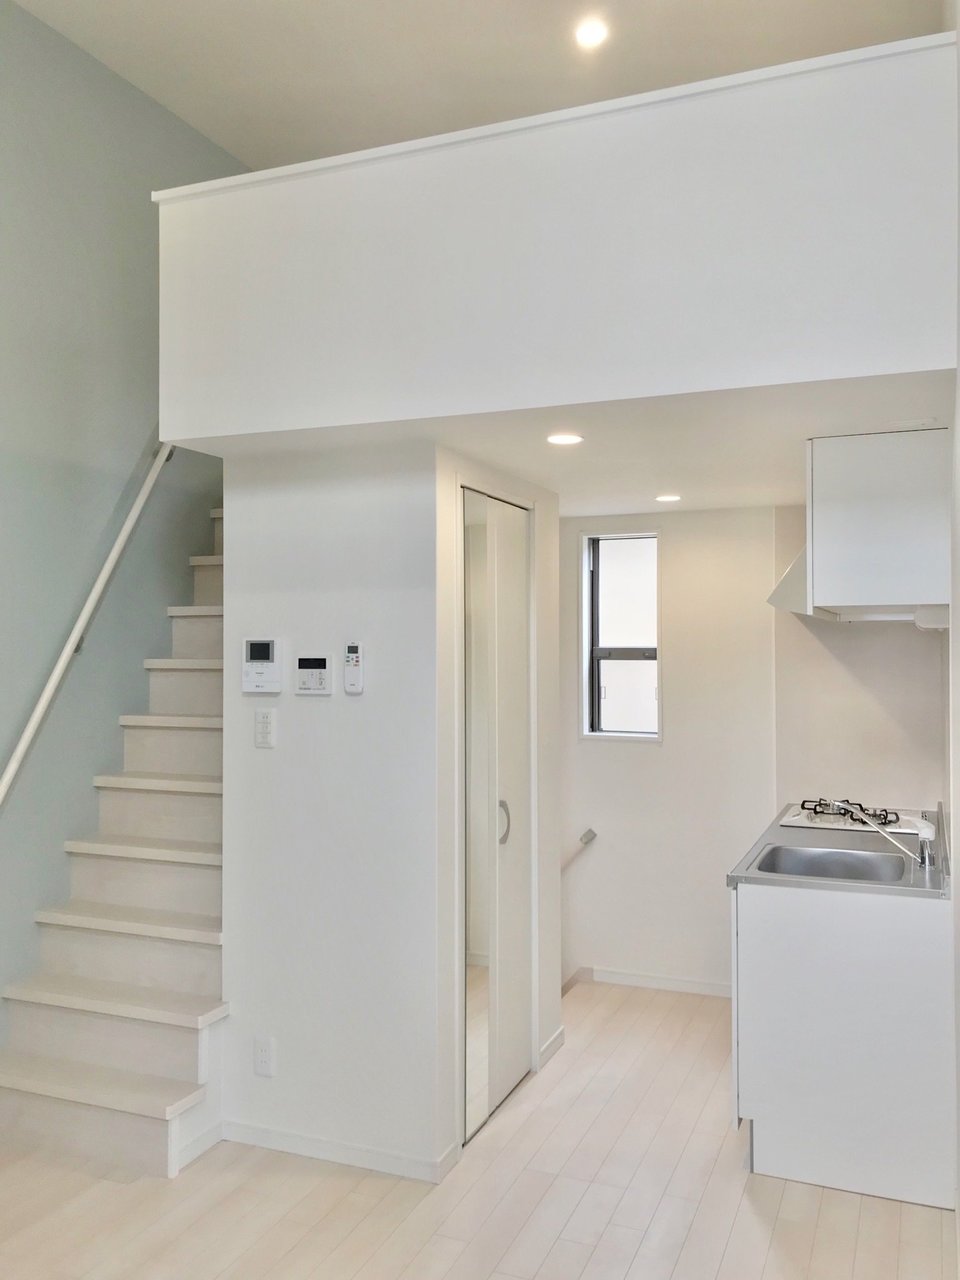 2階はシンプルな6.4畳の空間です。白いキッチン、白い床、それにブルーグレーの壁紙がよく映える。天井が高いのもいいですね。